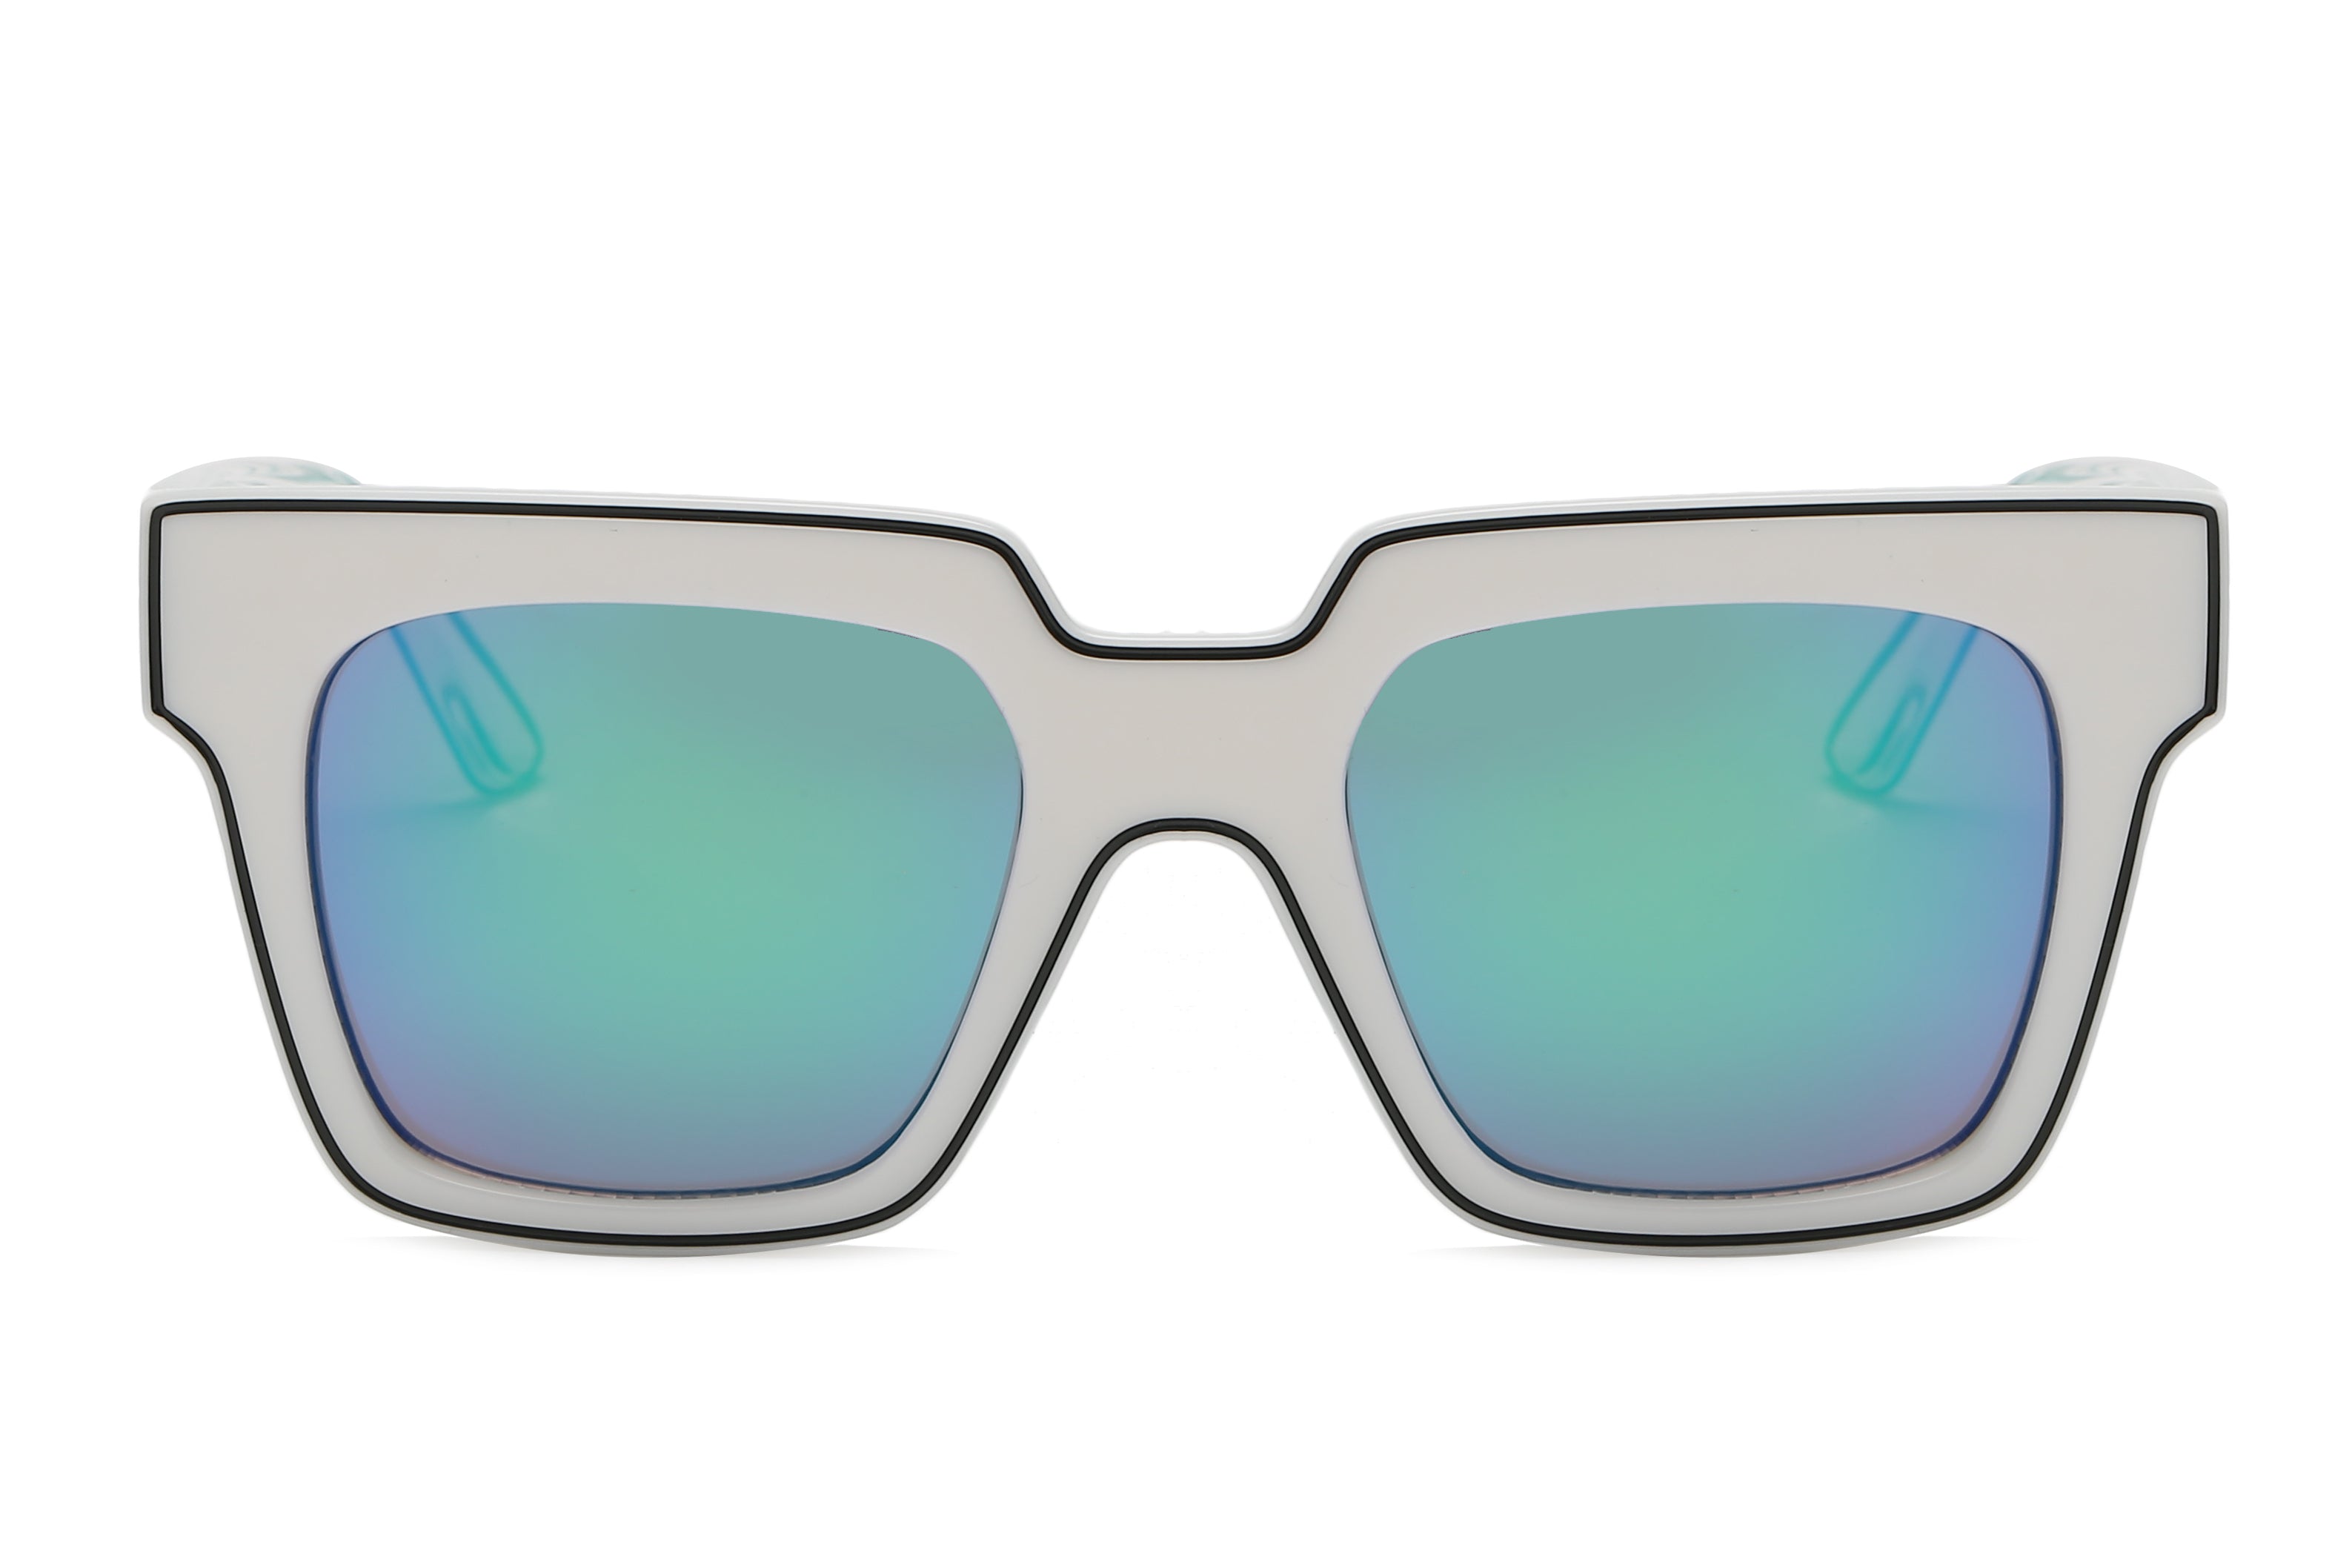 S1068 - Women Retro Square Oversize Sunglasses White/Blue Green